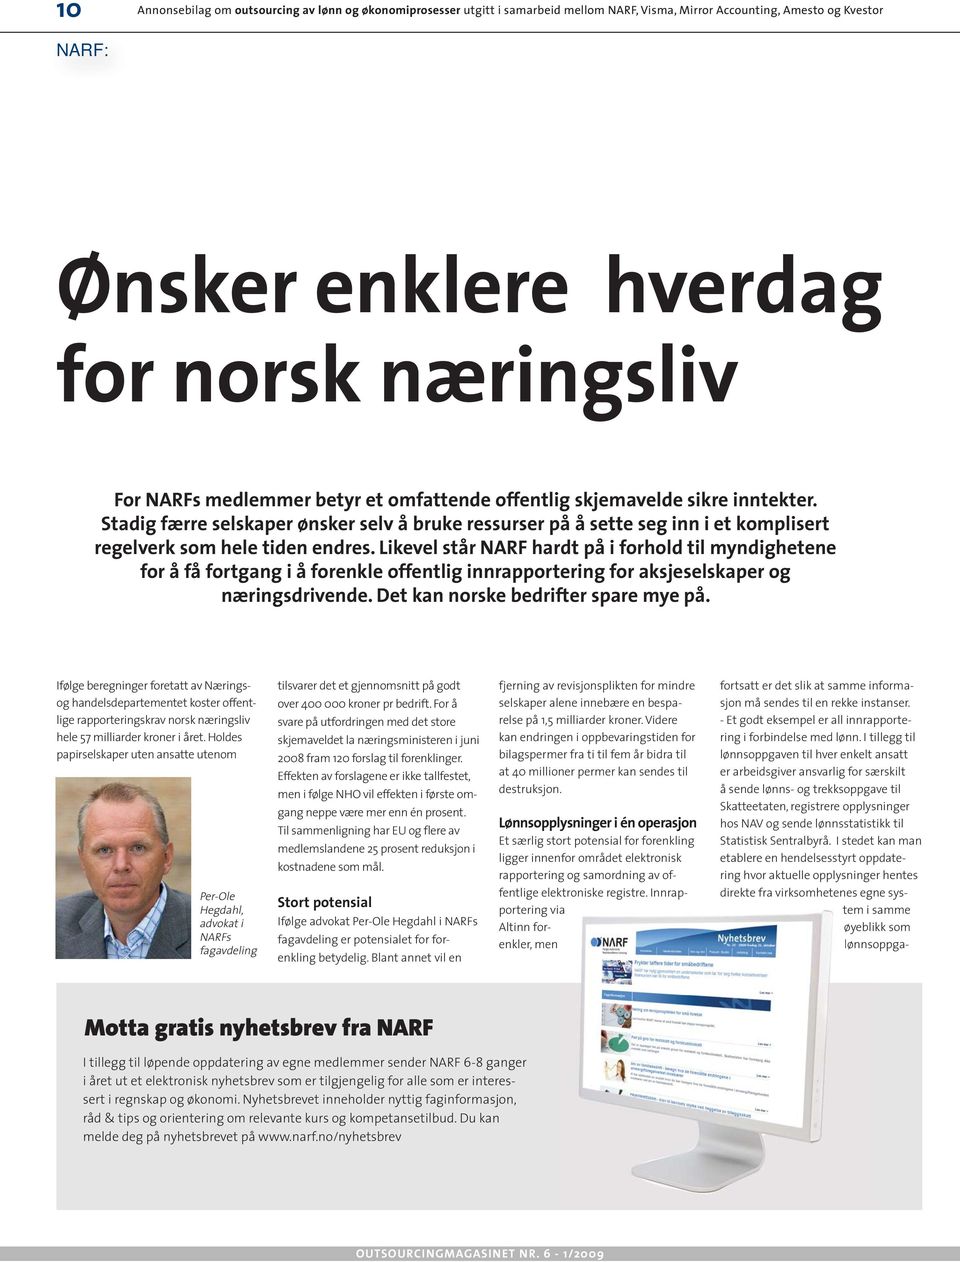 Likevel står NARF hardt på i forhold til myndighetene for å få fortgang i å forenkle offentlig innrapportering for aksjeselskaper og næringsdrivende. Det kan norske bedrifter spare mye på.